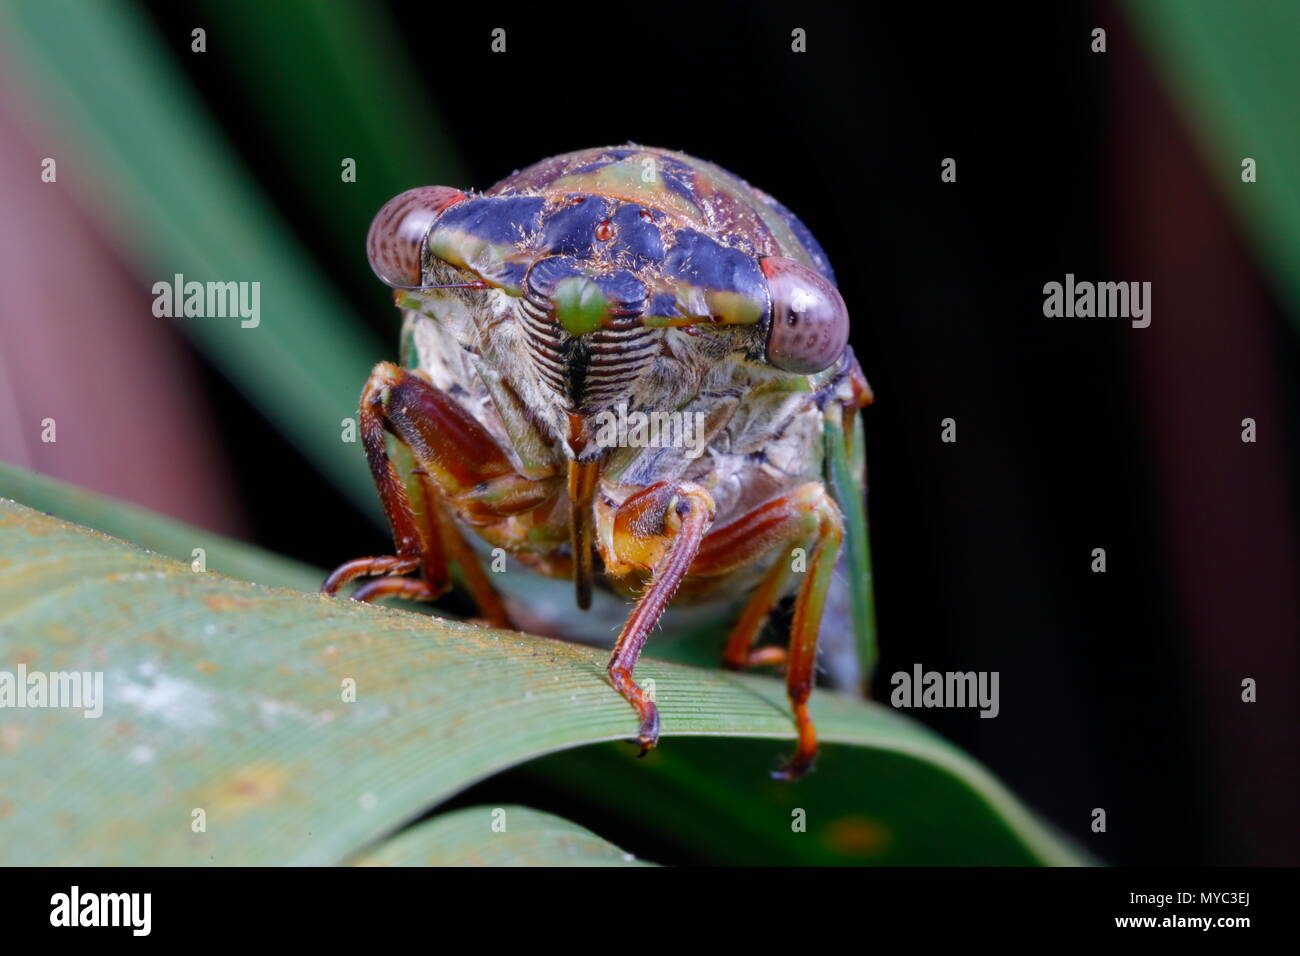 A cicada, Neotibicen davisi, perches on a palmetto leaf. Stock Photo